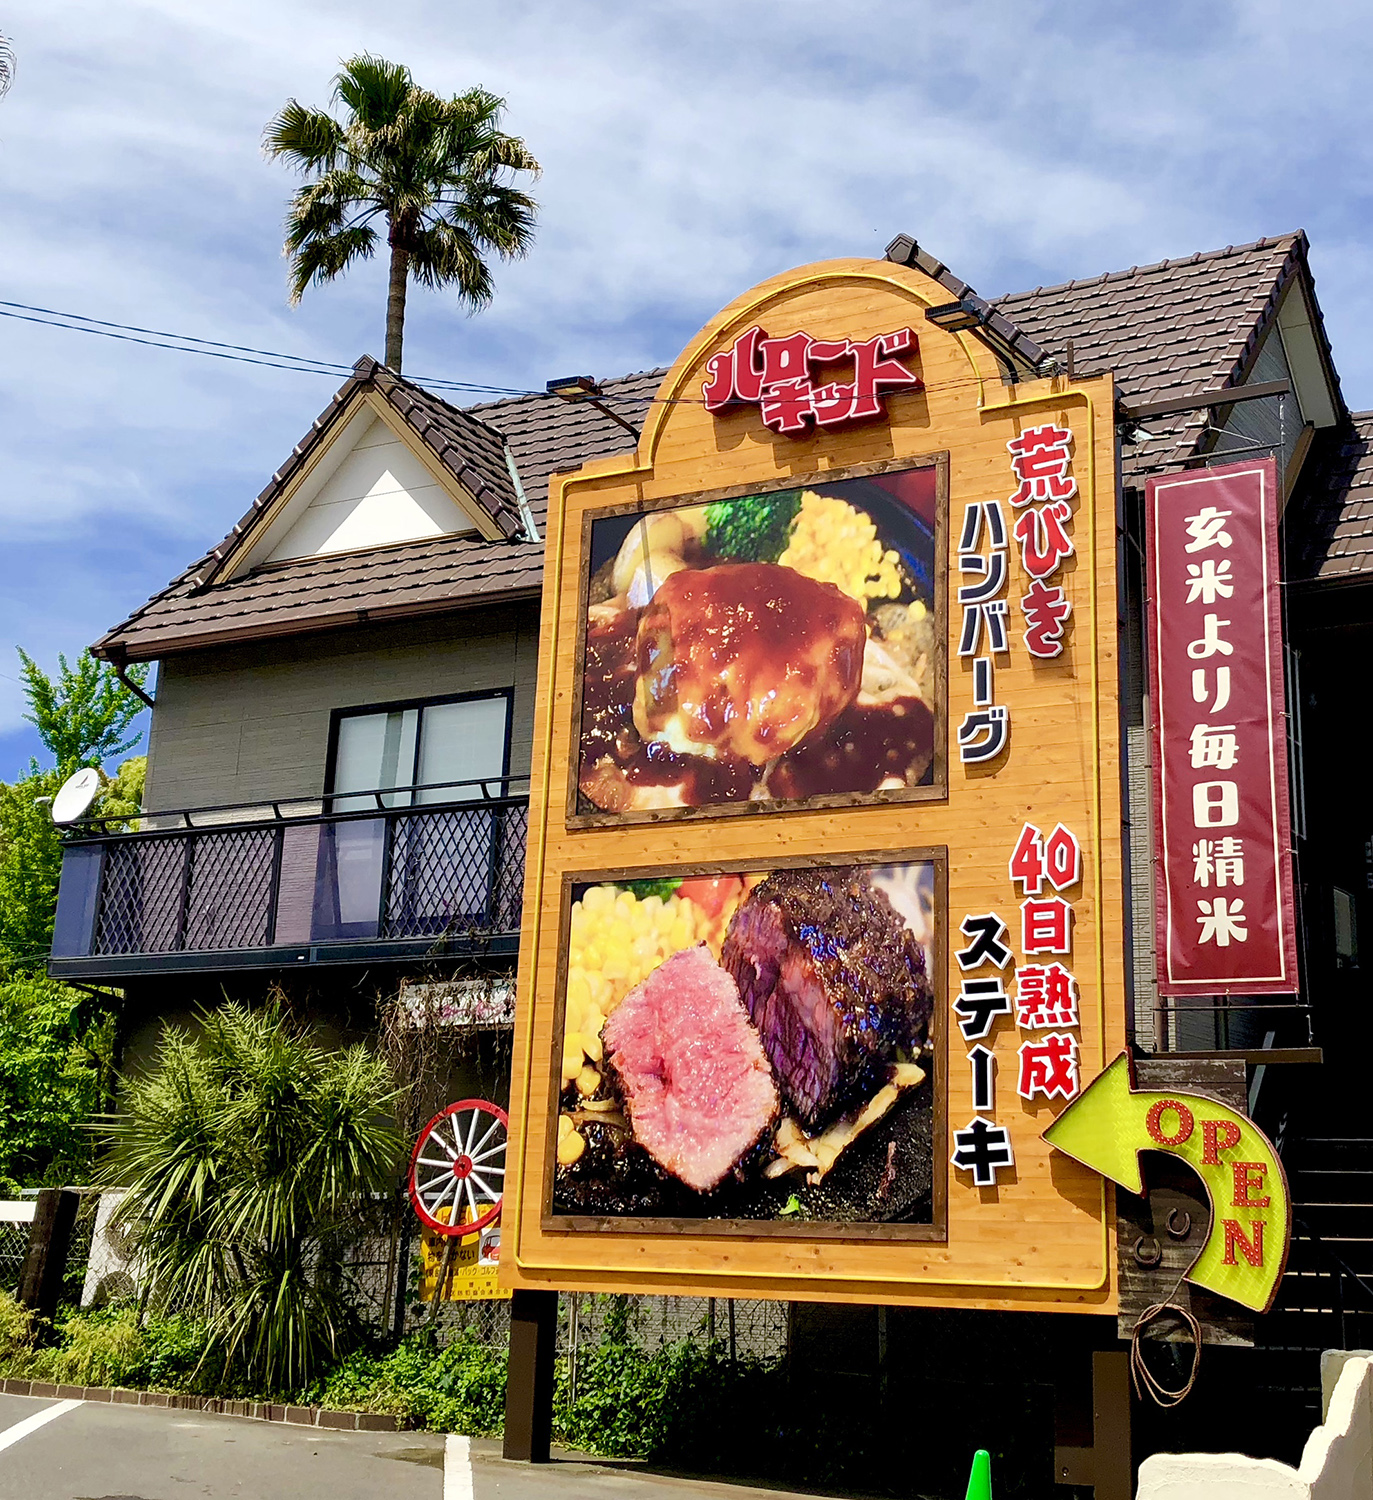 ウエスタンなレストランの木板を使った自立サイン 愛知県名古屋市